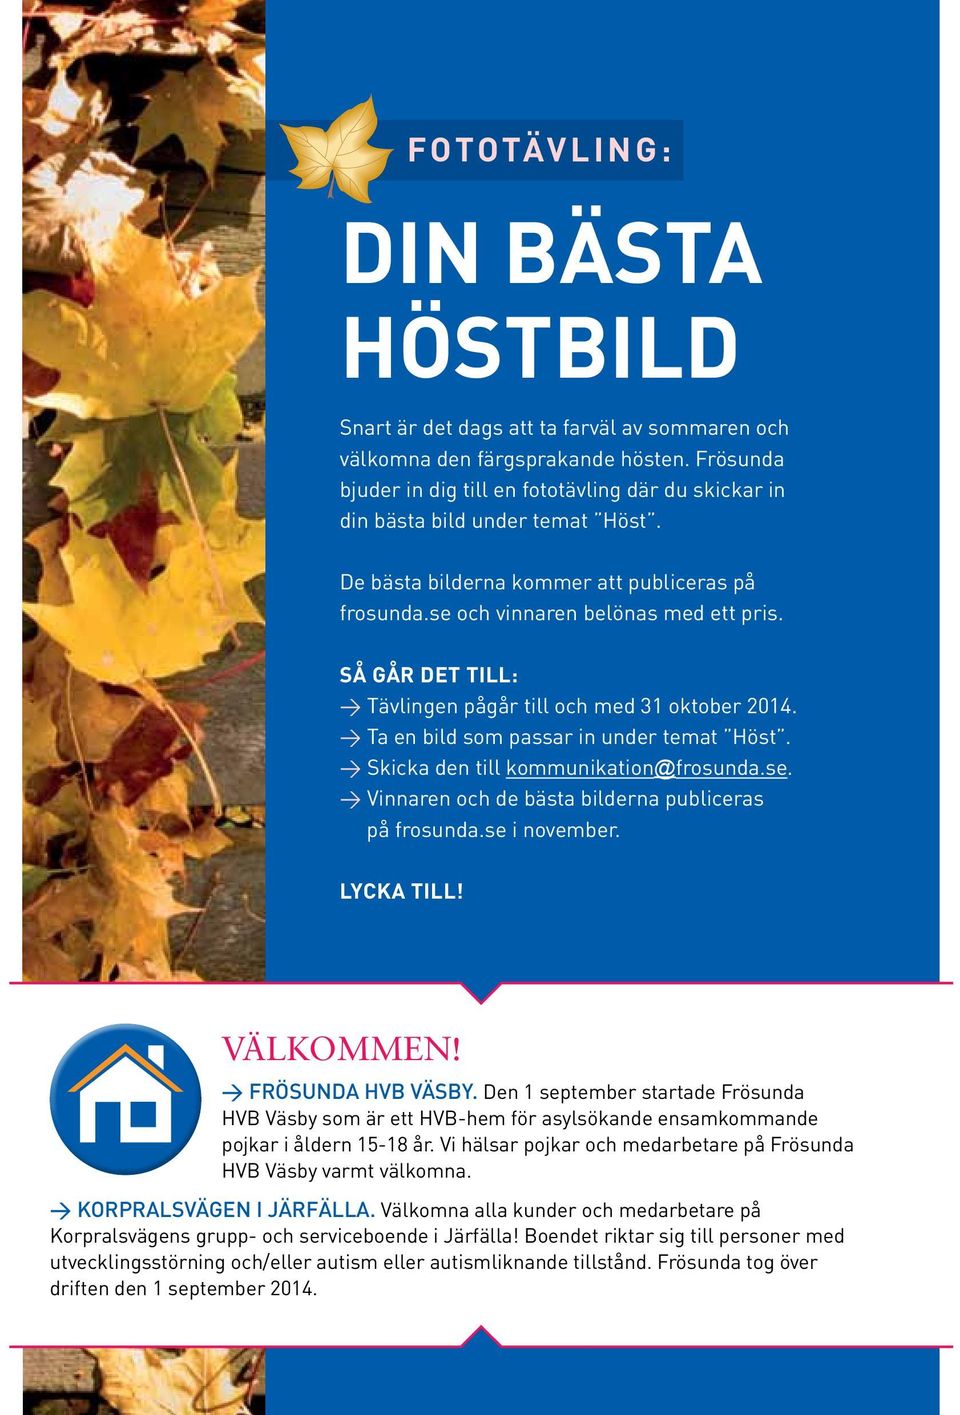 Så GåR DET TILL: > Tävlingen pågår till och med 31 oktober 2014. > Ta en bild som passar in under temat Höst. > Skicka den till kommunikation@frosunda.se.